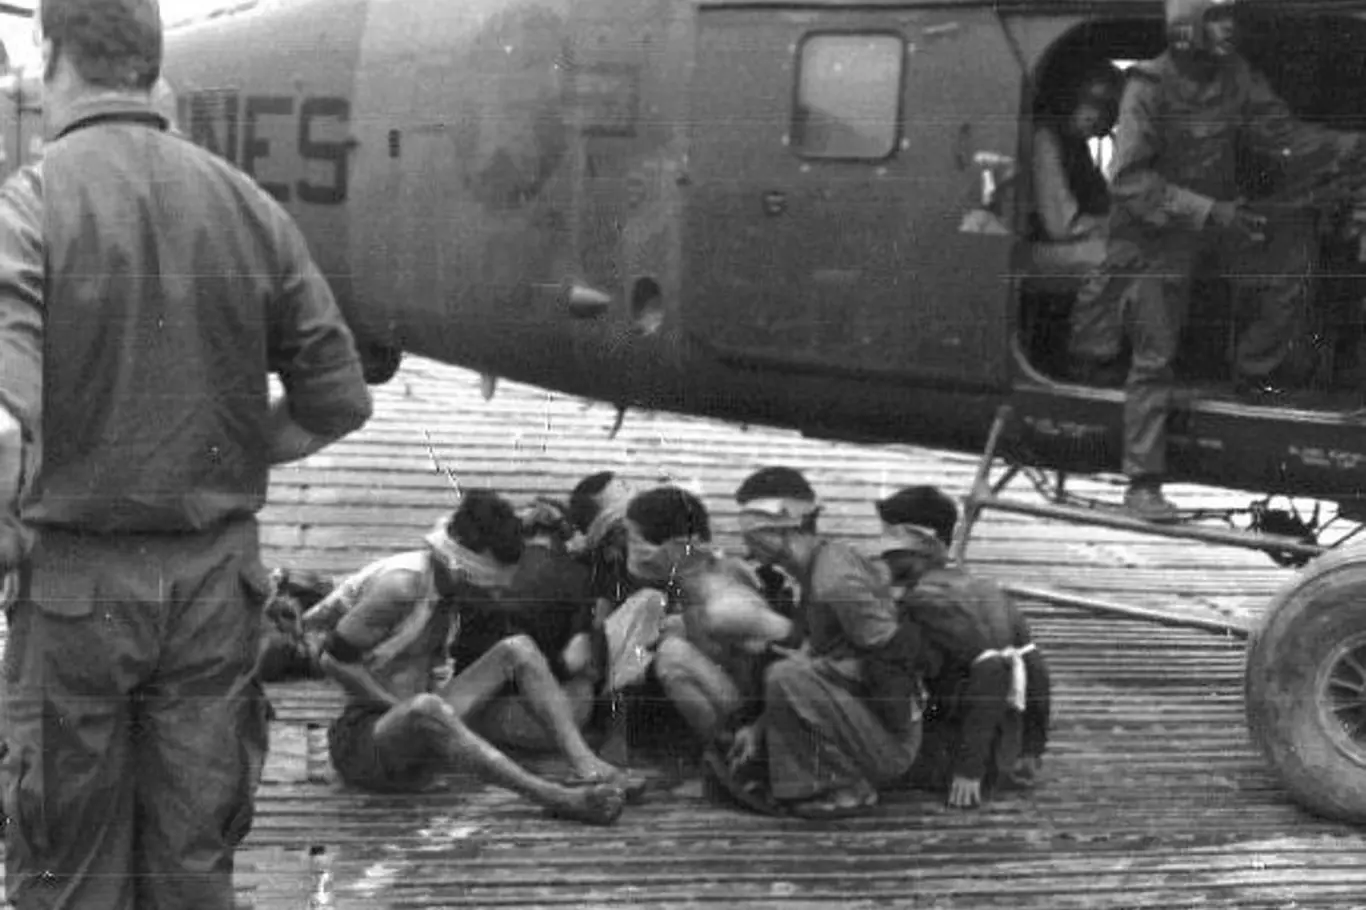 Vojáci Viet Kongu zajatí americkou námořní pěchotou mimo Dong Ha, RVN 1968